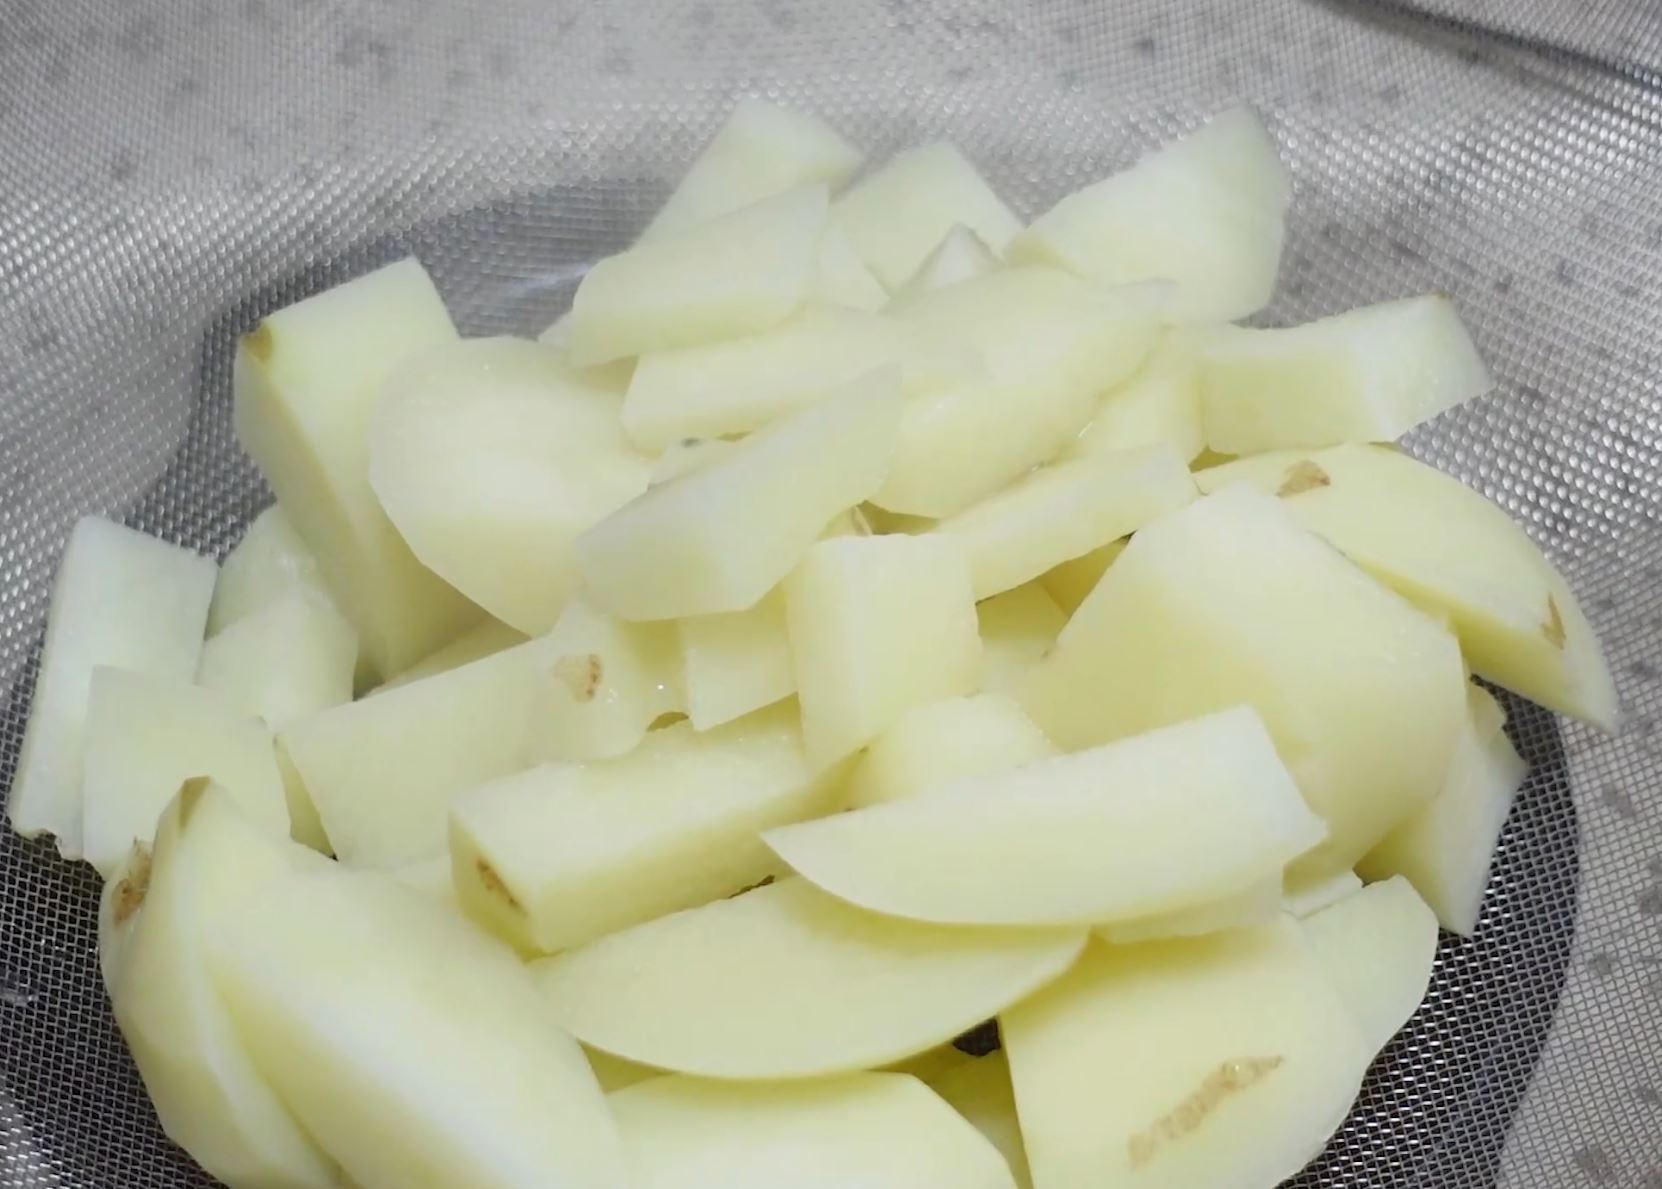 감자가 다 익고나면 채반에 한 김 식혀요. 